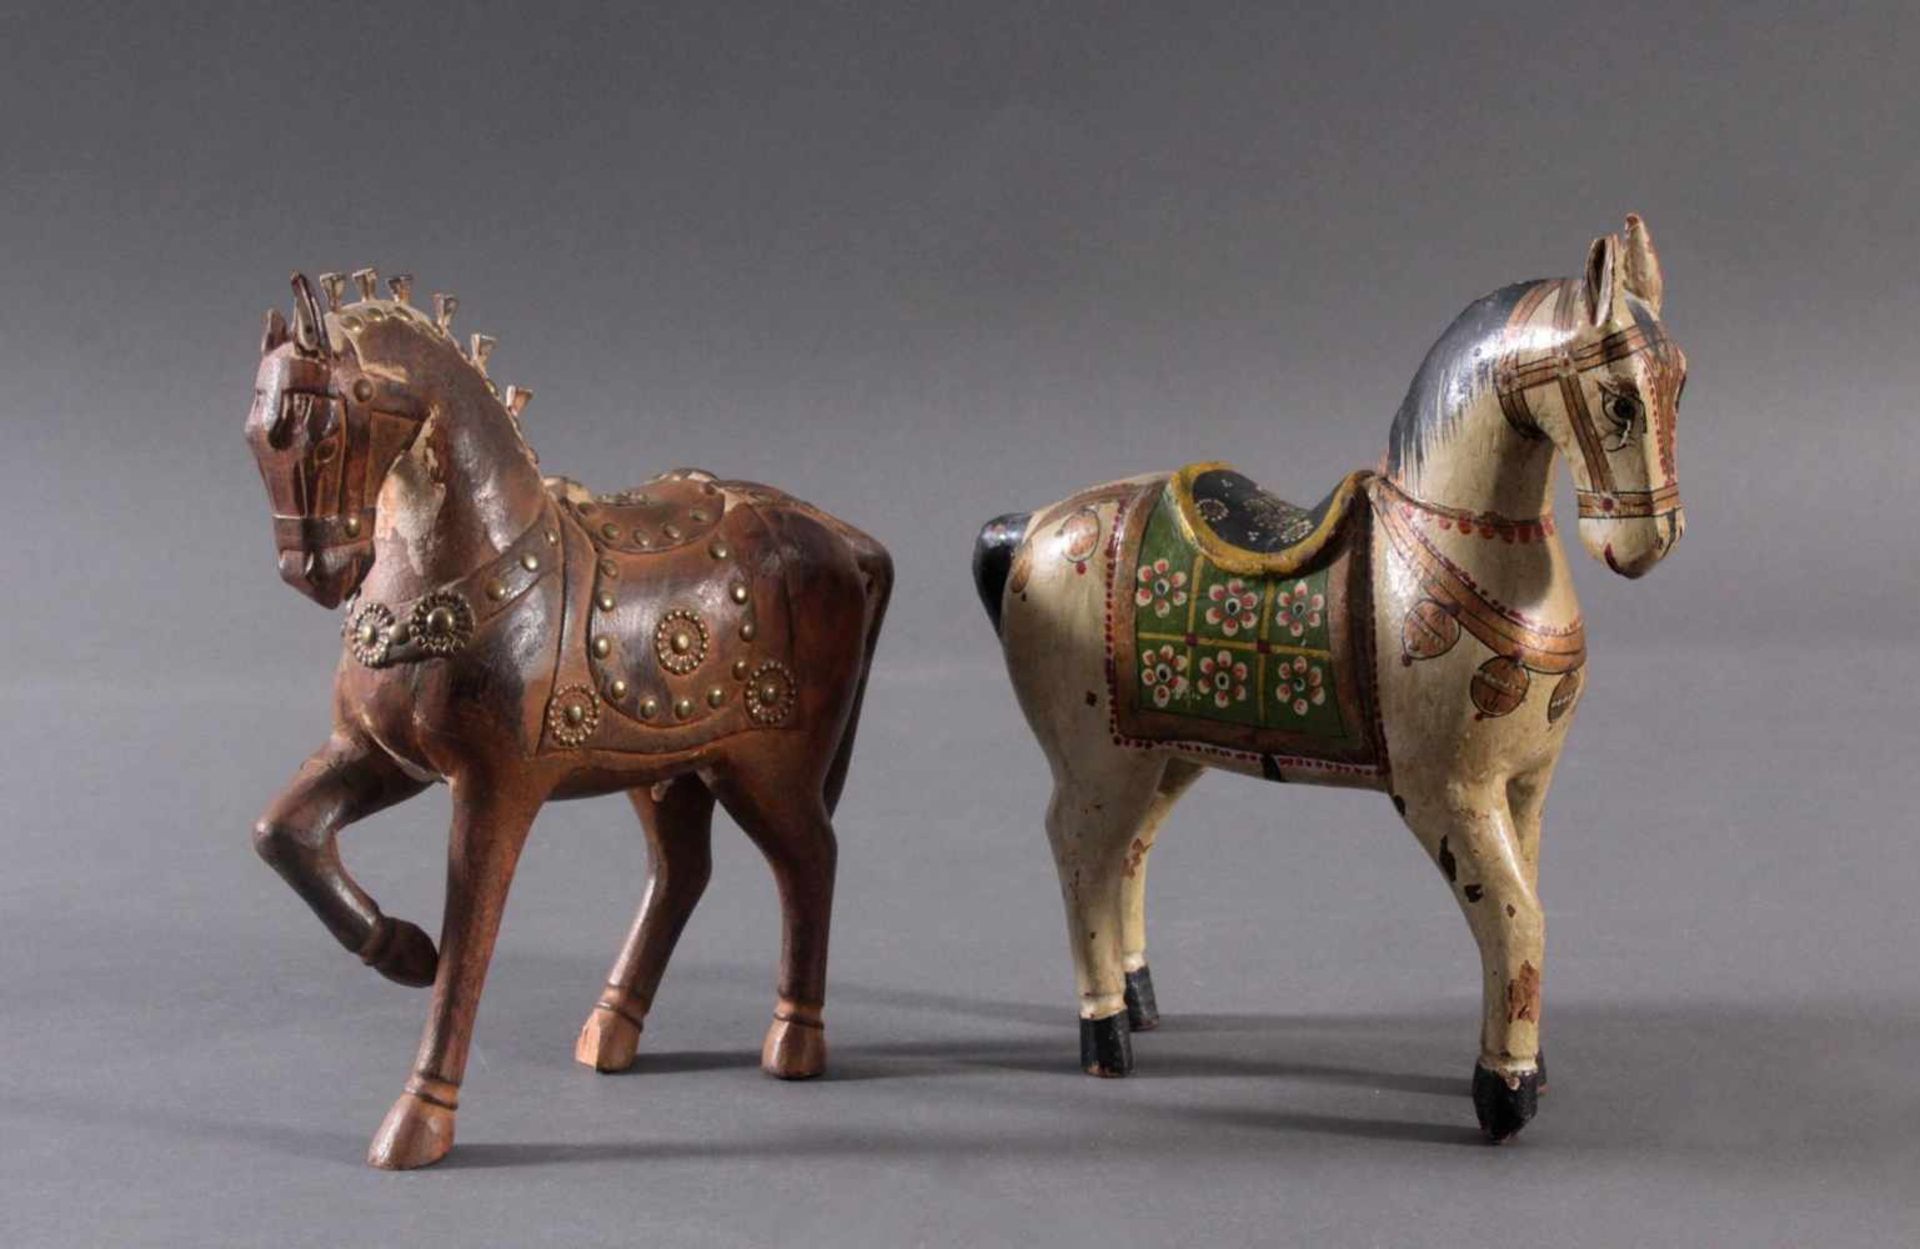 2 Pferdeskulpturen aus Holz 1. Hälfte 20. Jh.Aus dem Vollholz geschnitzt, farbig gefasst, ca. 26 x